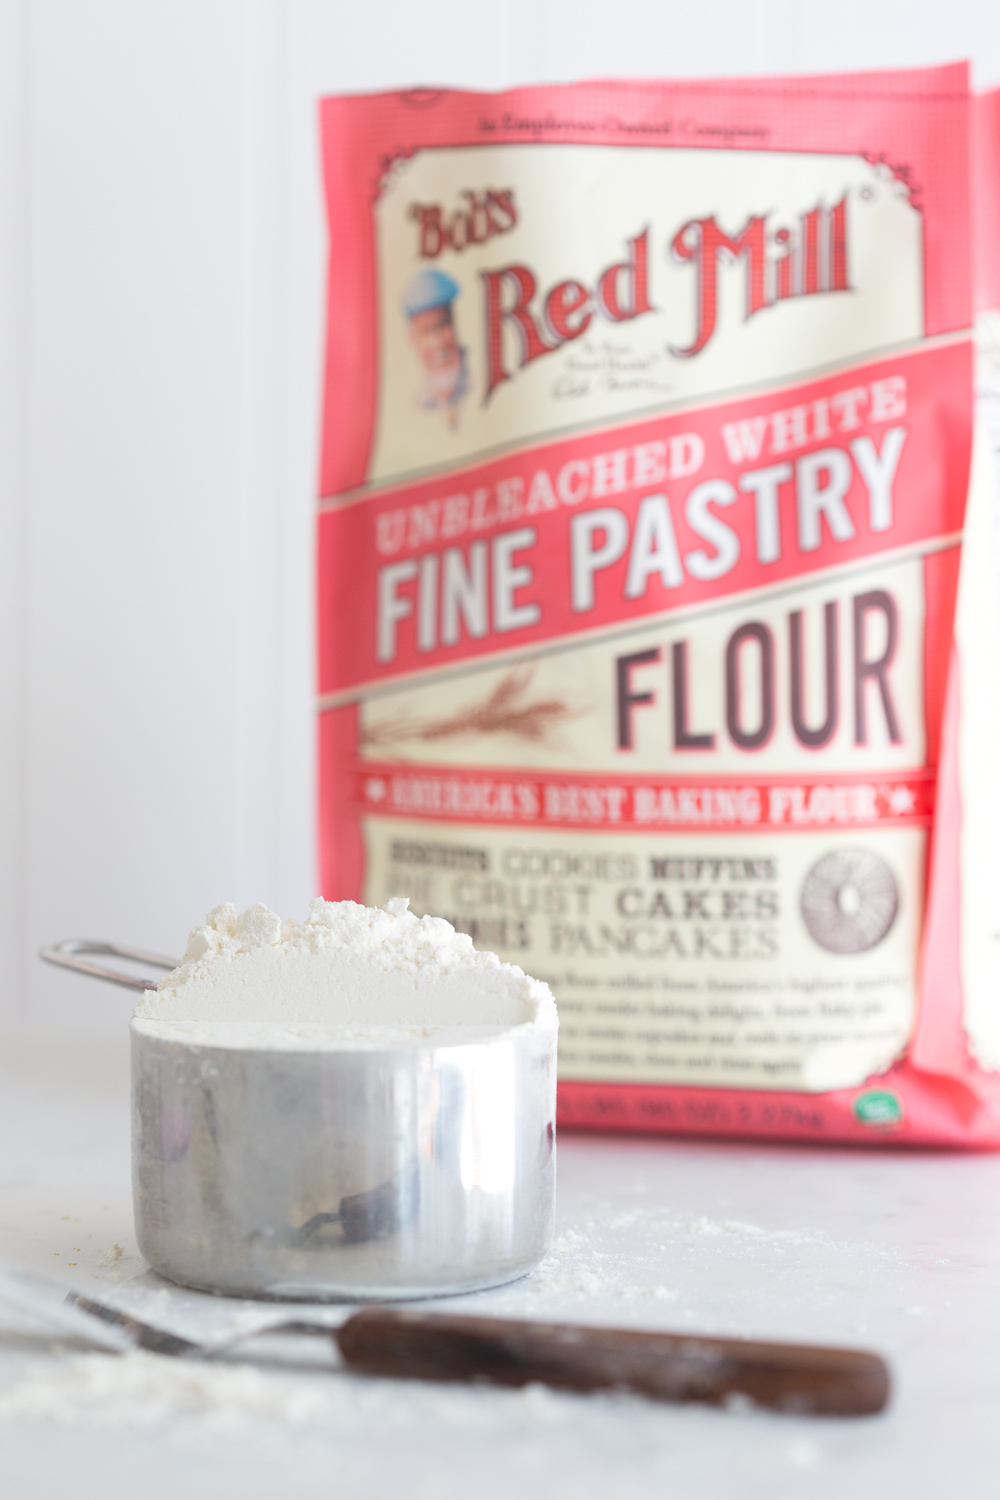 Bob's Red Mill Fine Pastry Flour for Lemon Chamomile Honey Bundt Cake